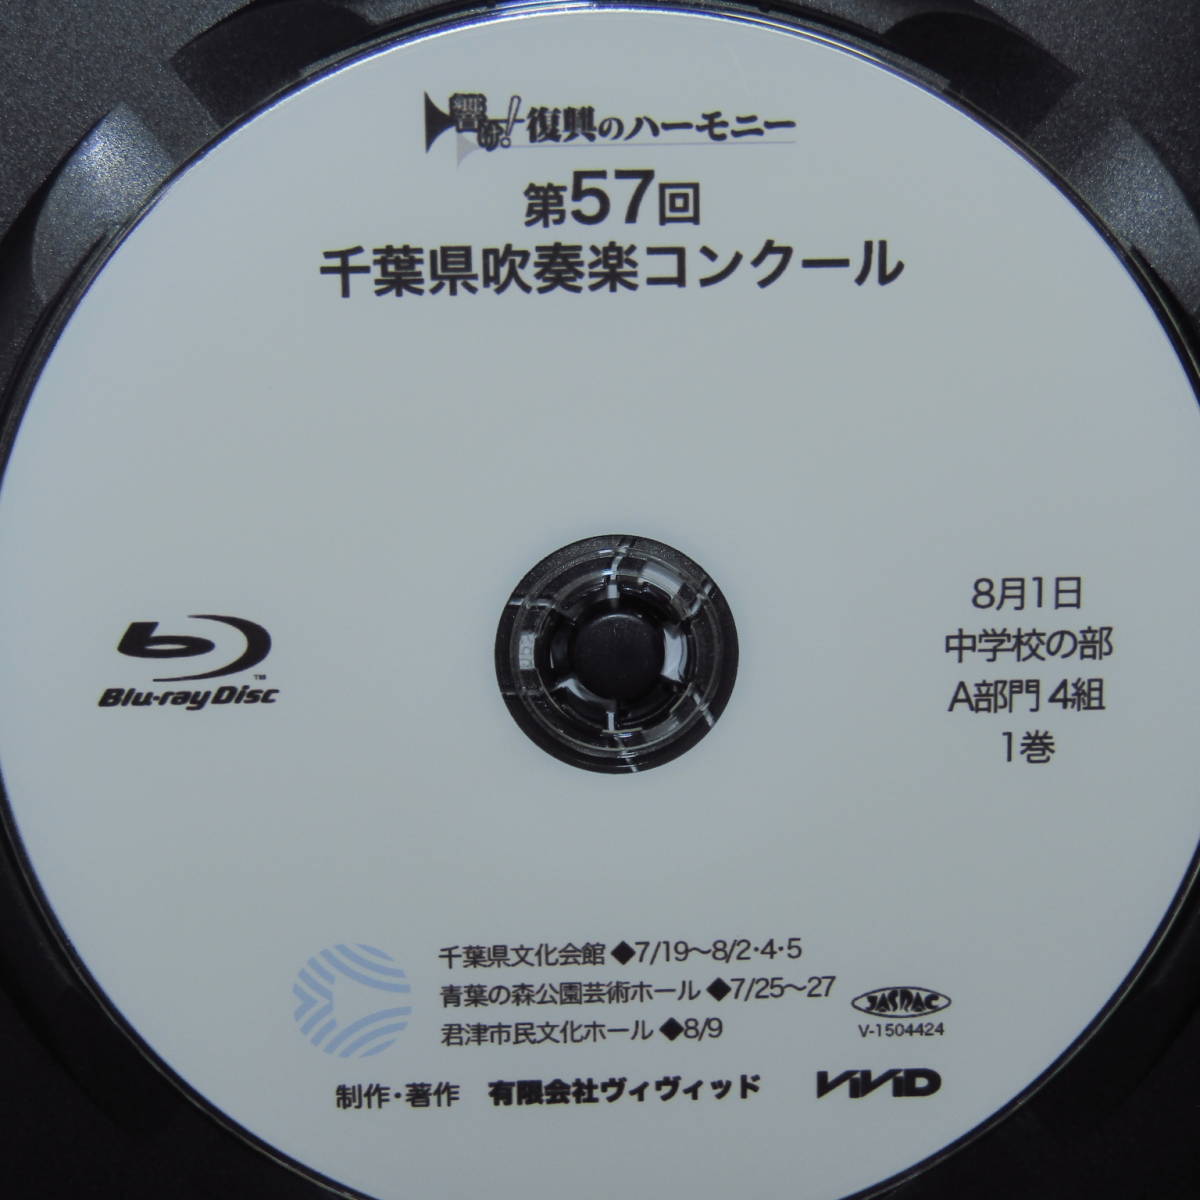 Blu-ray[ эпоха Heisei 27 отчетный год no. 57 раз Chiba префектура духовая музыка темно синий прохладный 8 месяц 1 день неполная средняя школа. часть A группа 4 комплект 1 шт Blue-ray ]